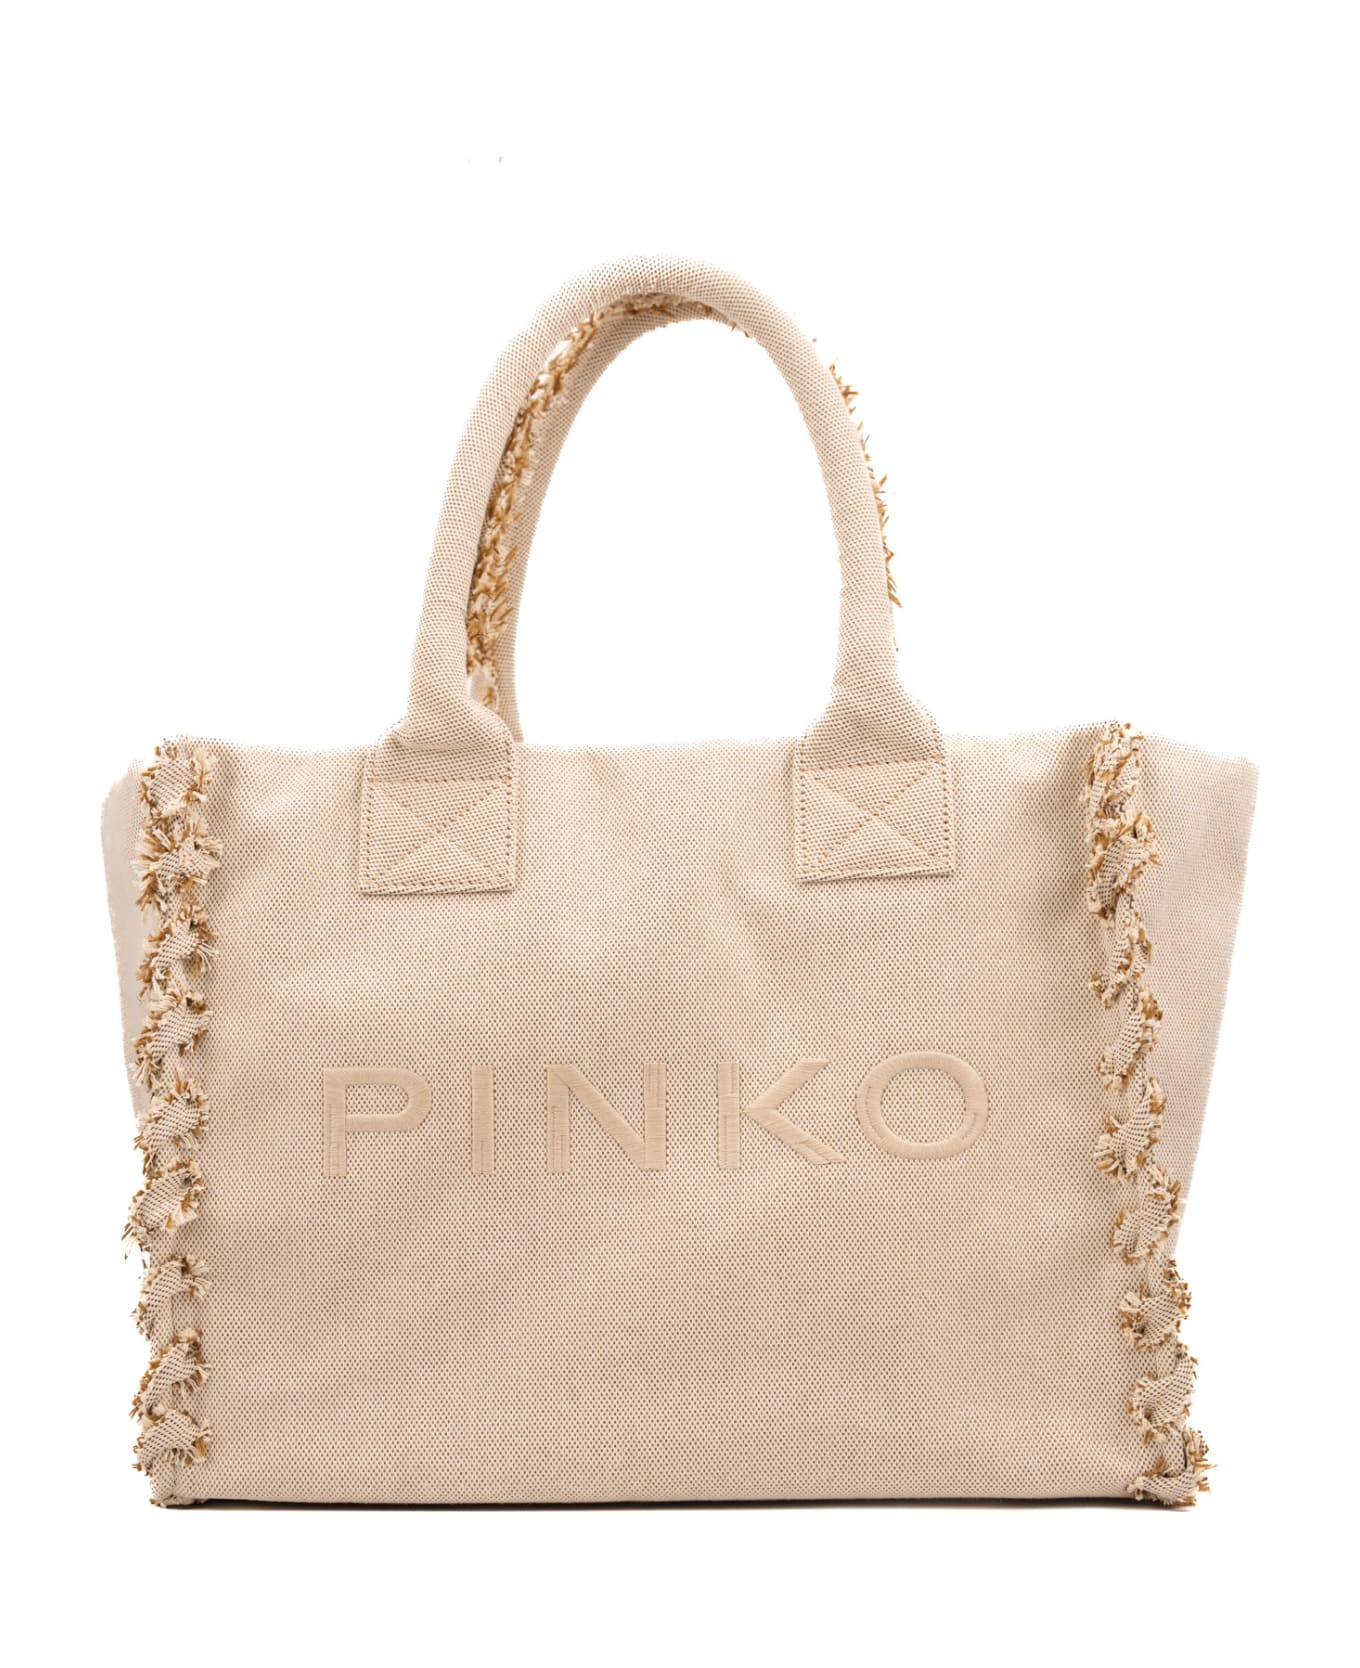 Pinko Canvas Beach Shopper - Sabbia